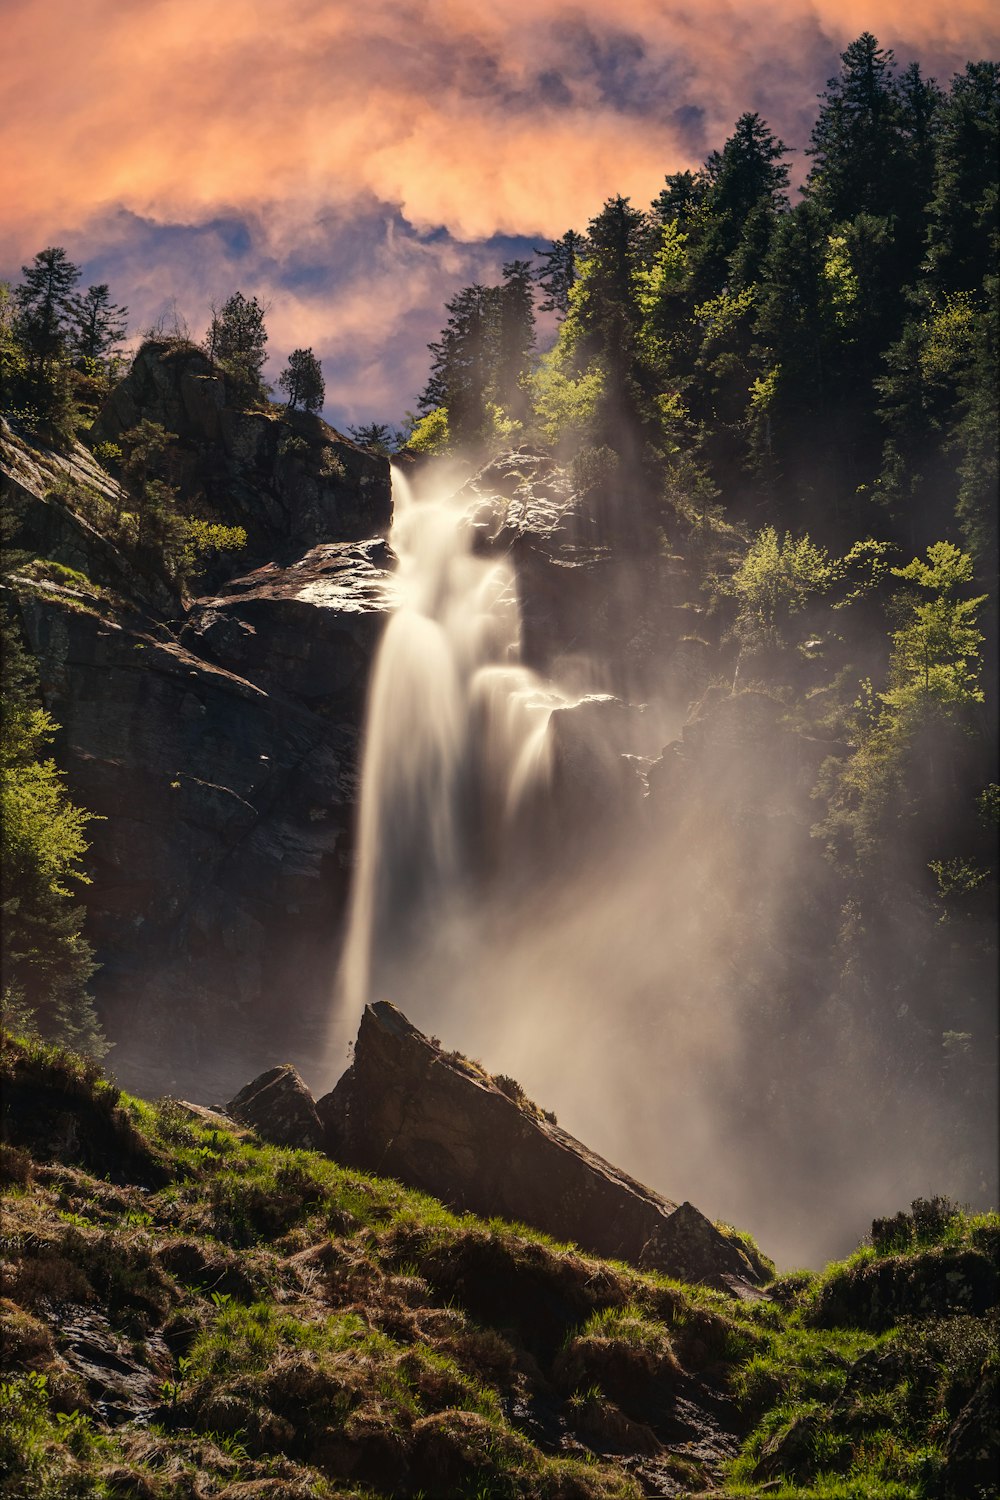 waterfalls near trees